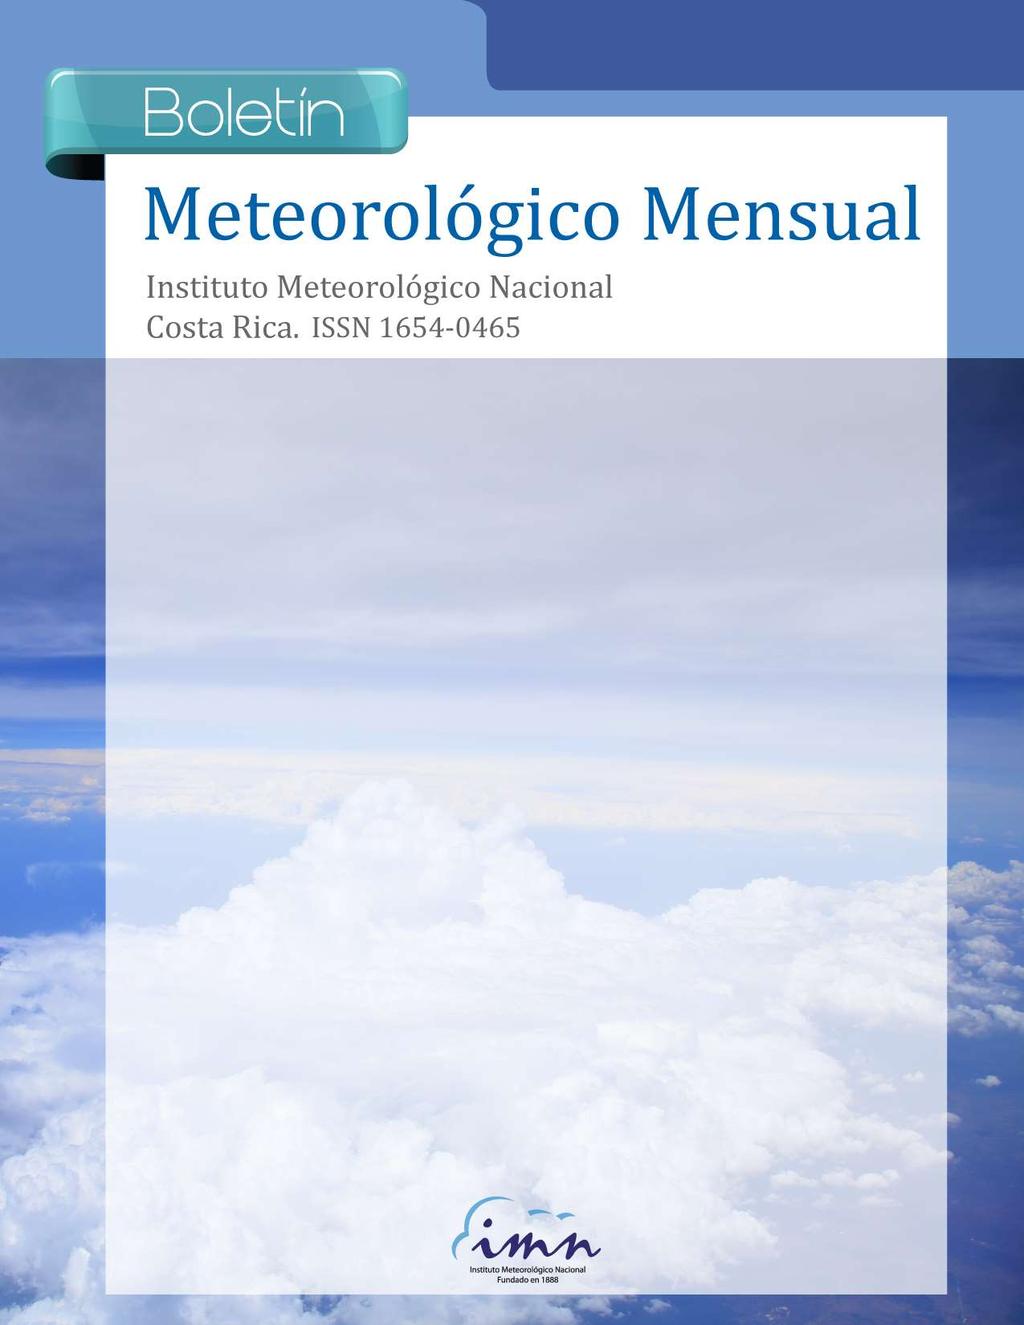 1 Resumen meteorológico marzo 217 Boletín Marzo Meteorológico 217 Mensual Contenido Página Resumen Meteorológico Mensual...2 Información Climática Estaciones termopluviométricas.